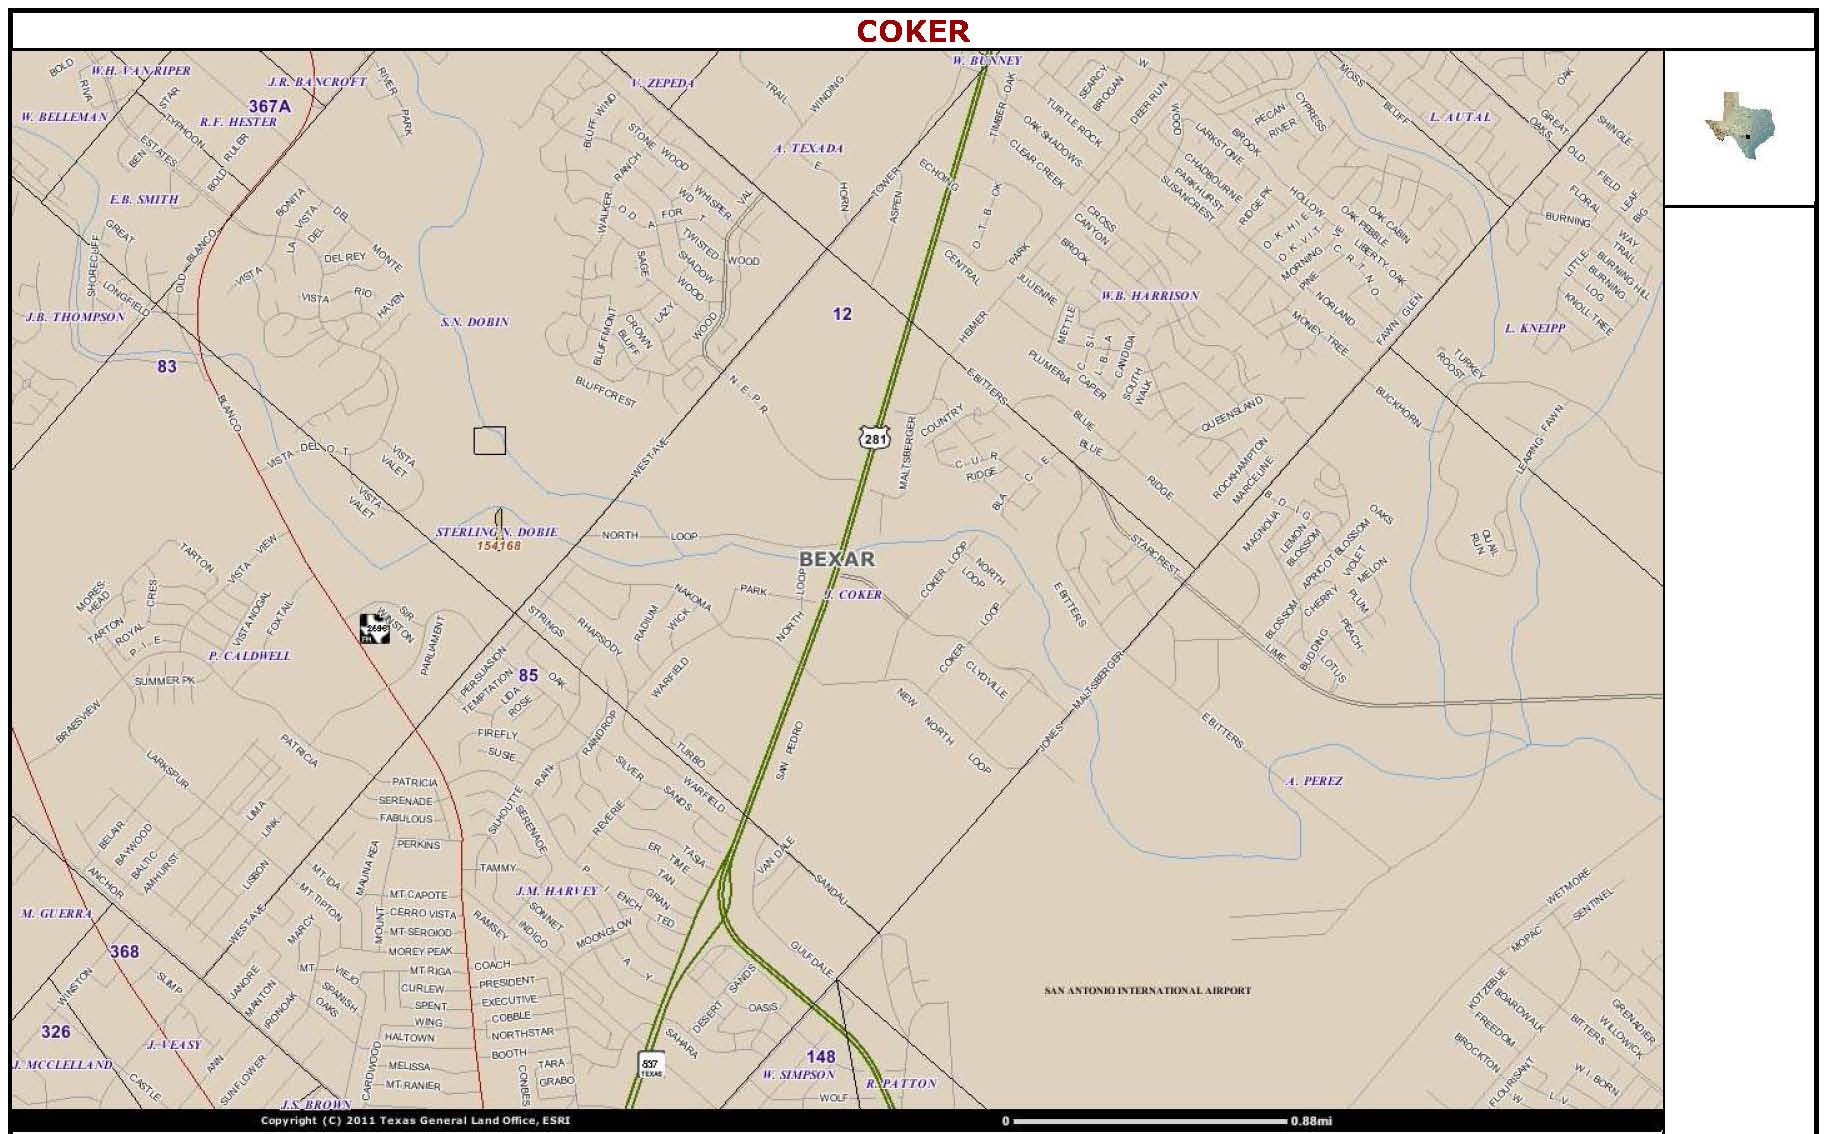 John Coker's land grant in Bexar County